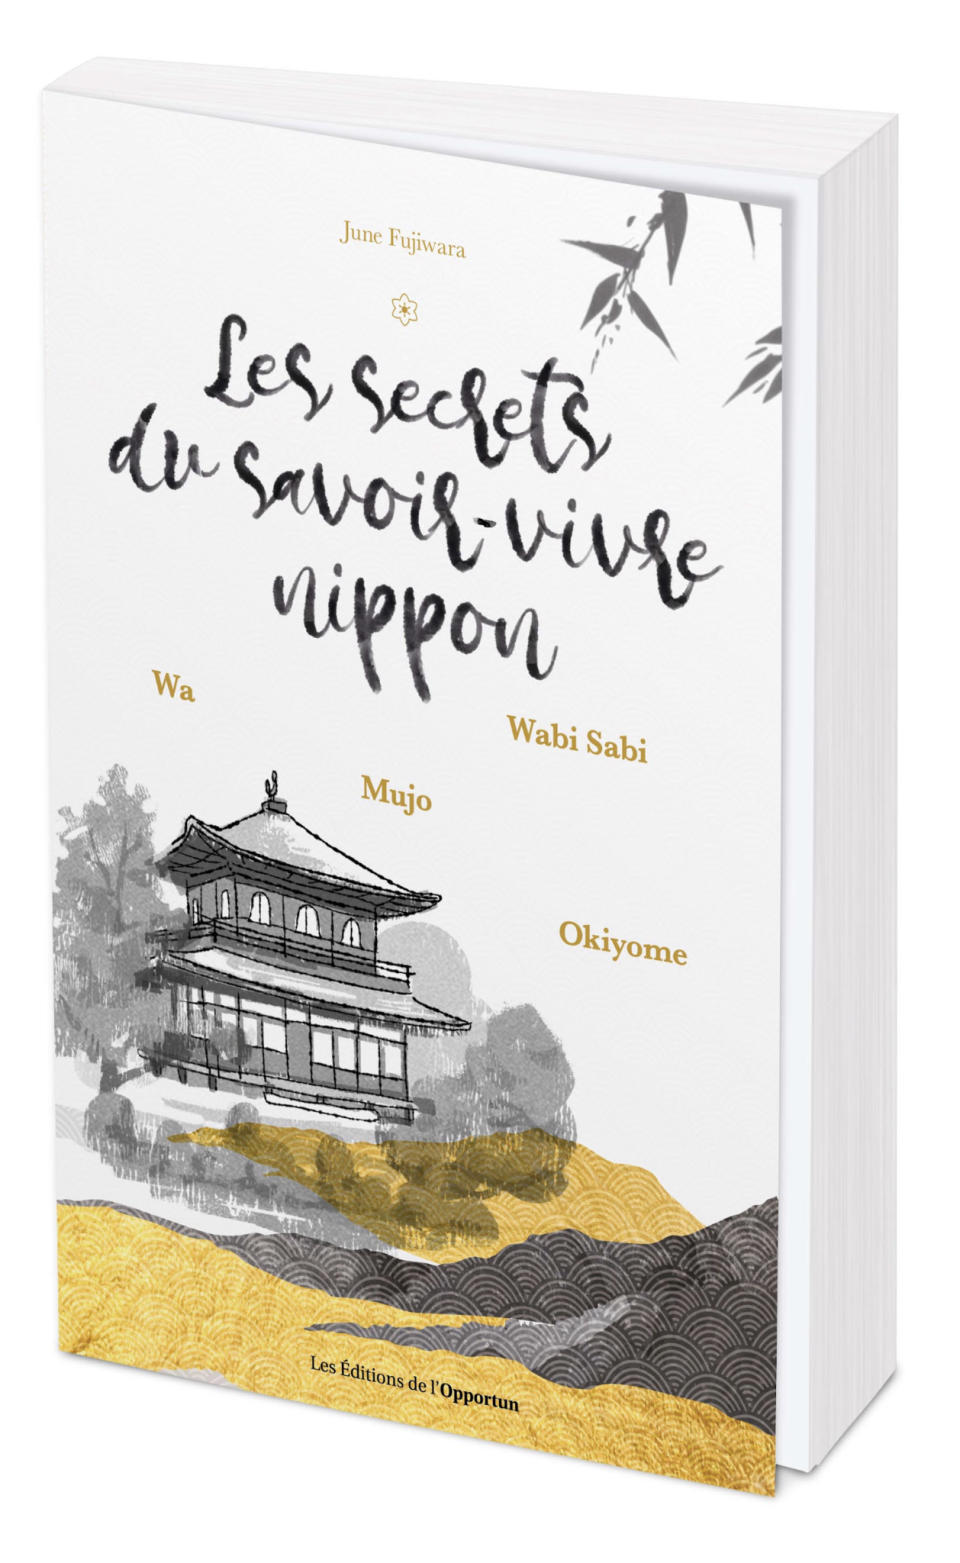 “Les secrets du savoir-faire nippon” (“The Secrets of the Japanese Way of Life”) by June Fujiwara. - Credit: Courtesy of Les Éditions de l'Opportun